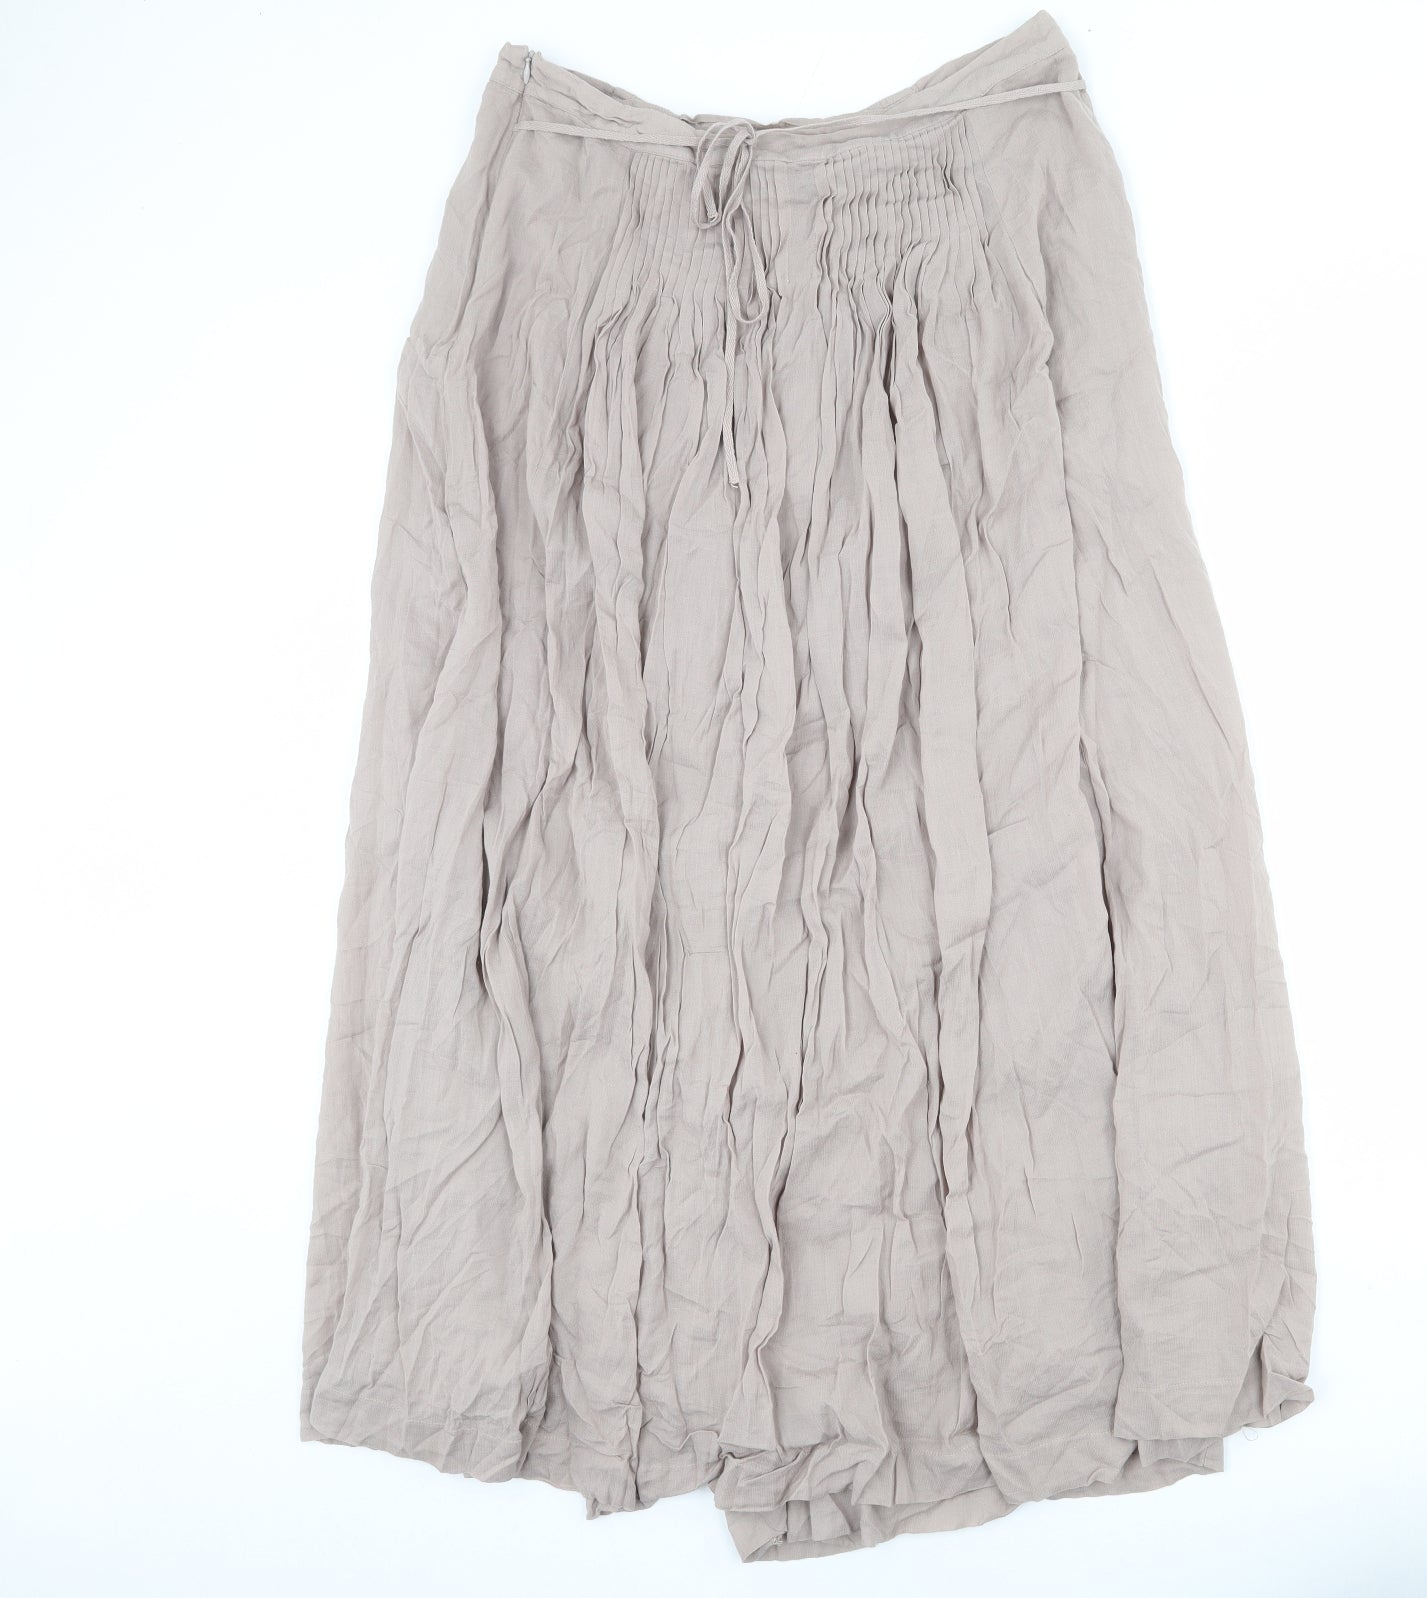 NEXT Womens Beige Cotton Peasant Skirt Size 14 Zip